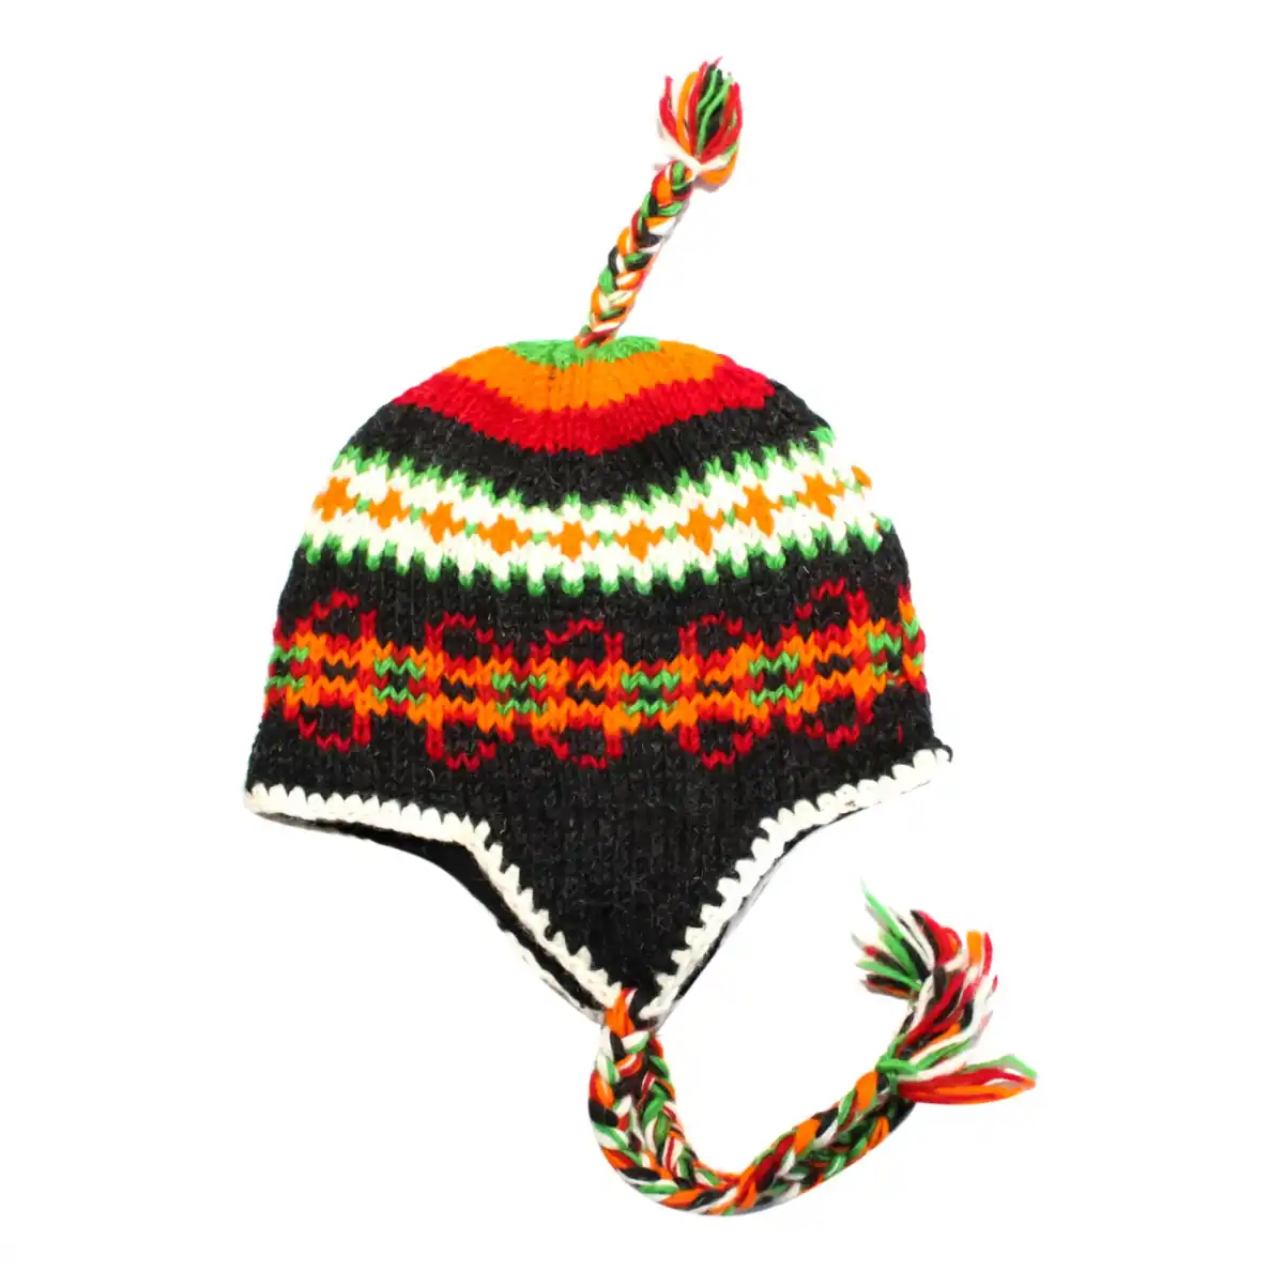 冬季儿童羊毛护耳帽尼泊尔加厚彩虹可爱大童捂耳帽女孩男孩毛线帽